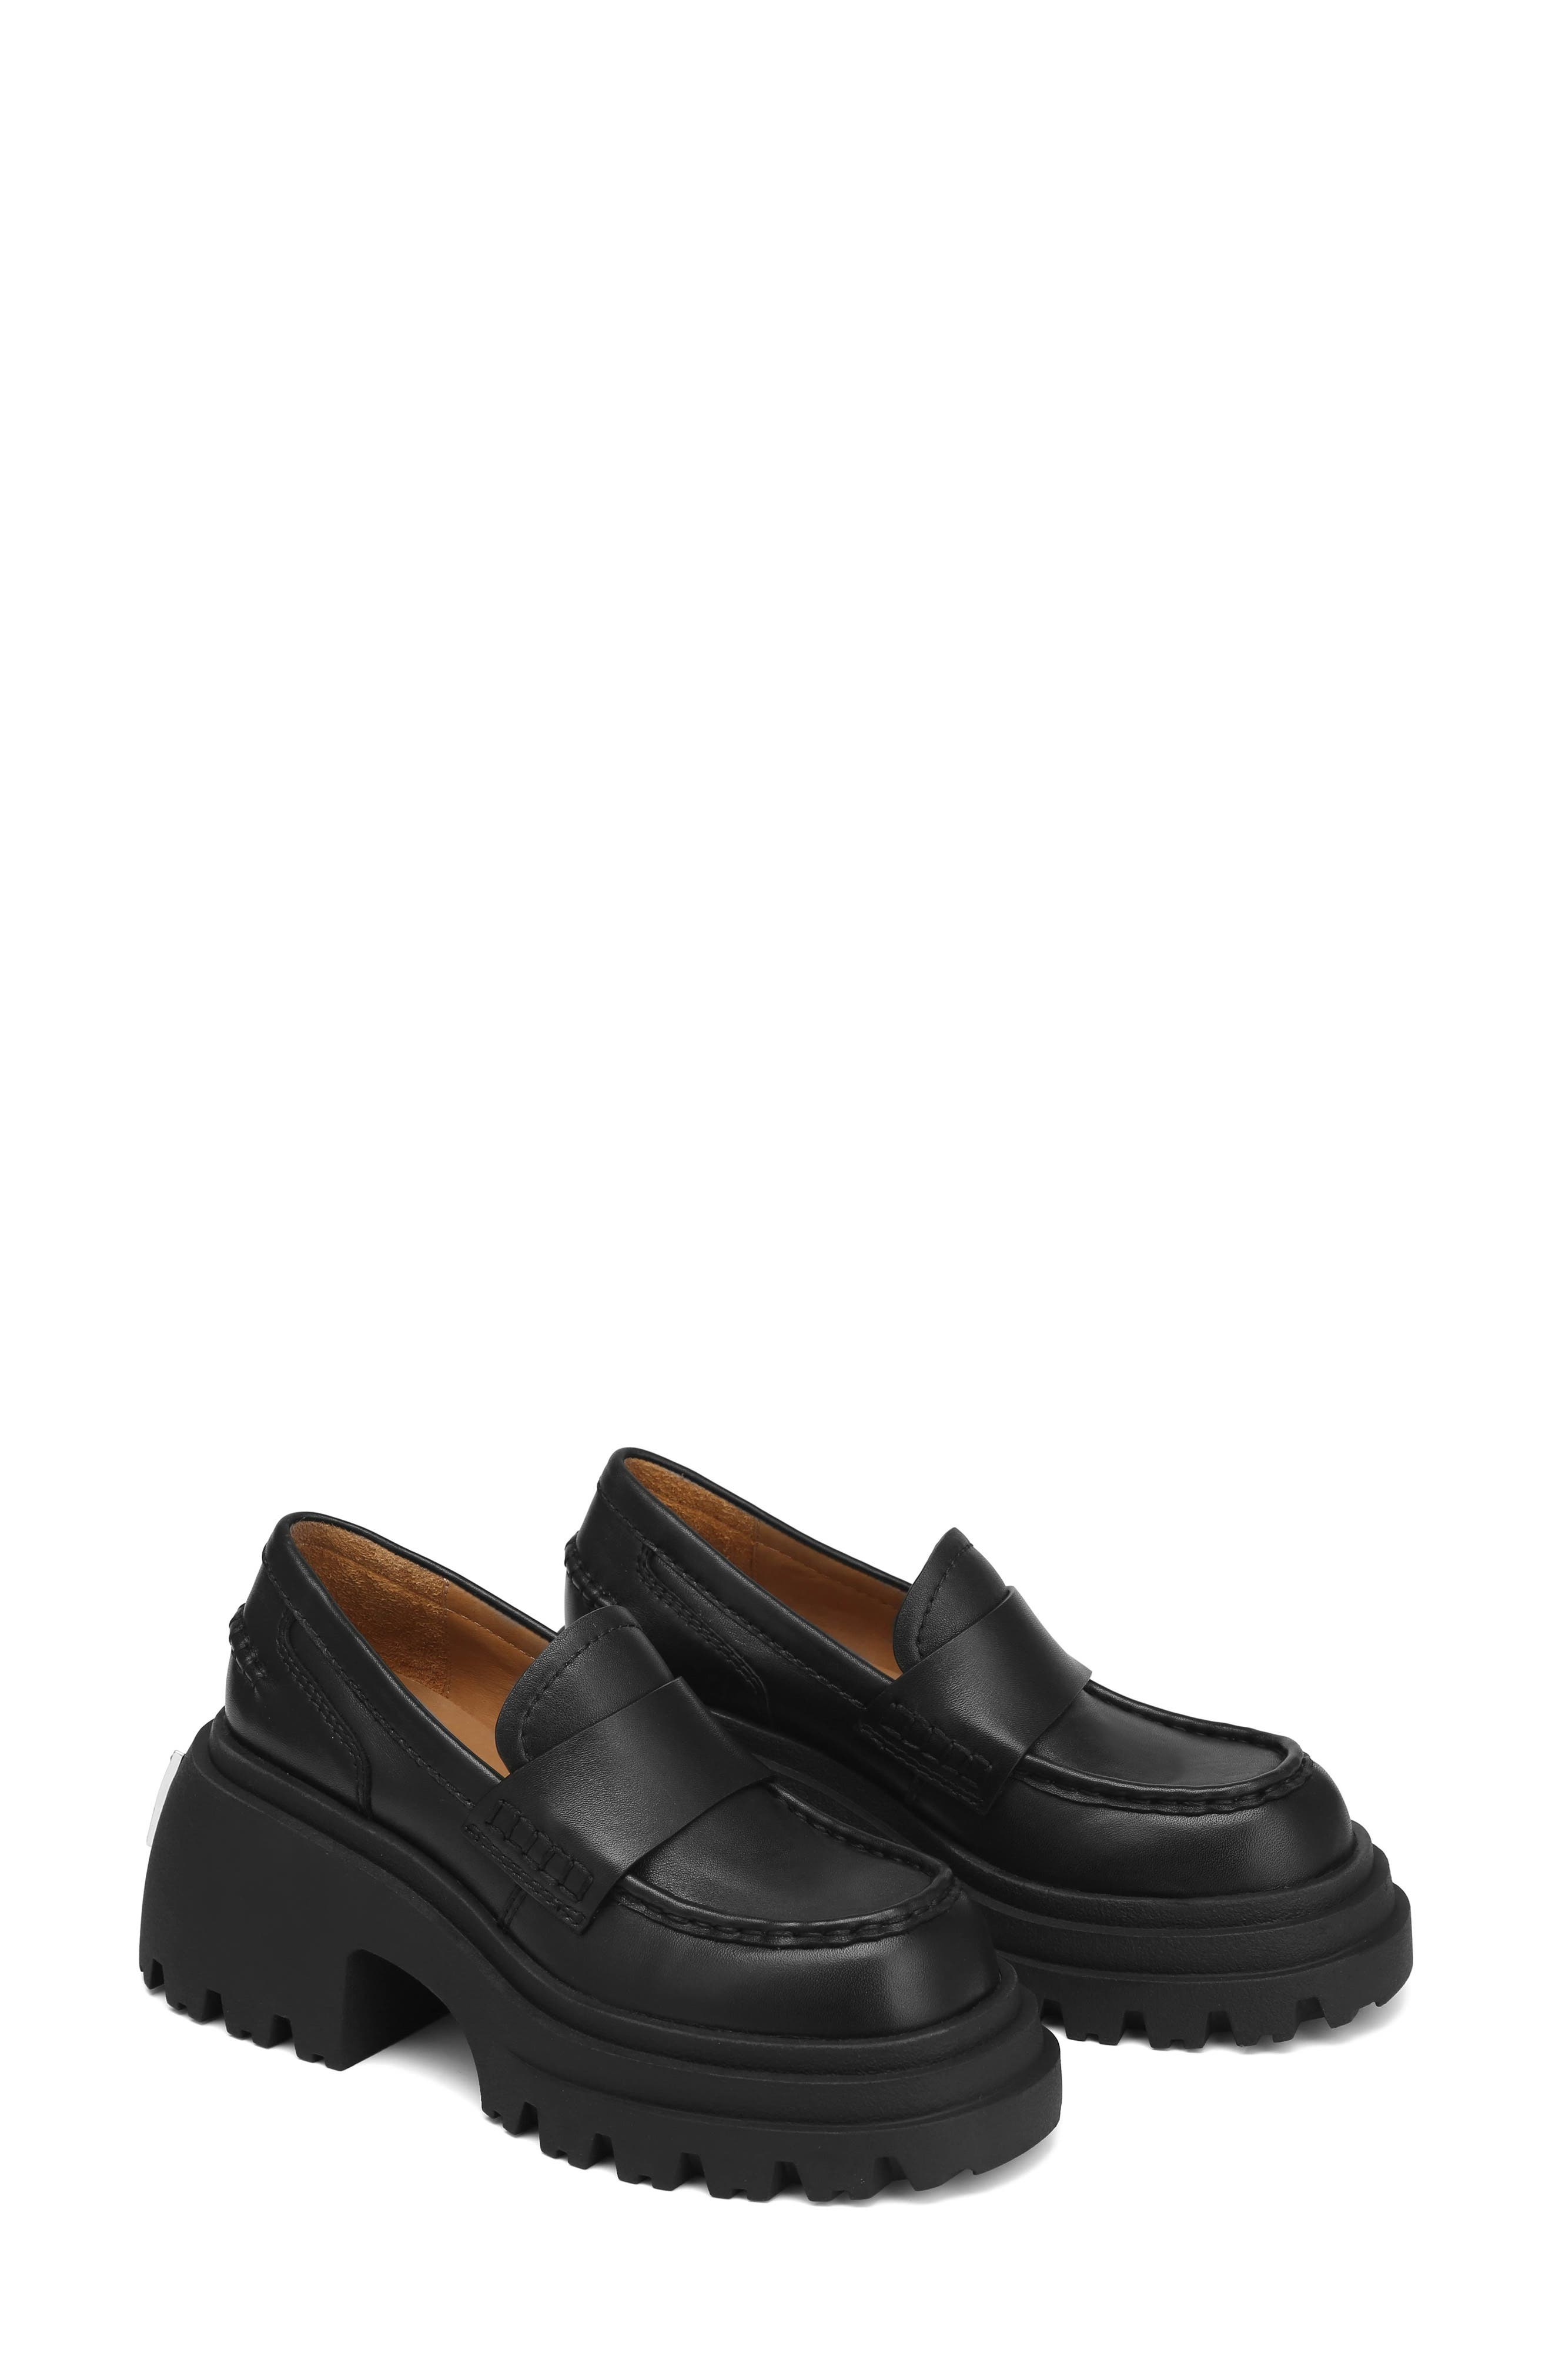 特価超激安Naked Wolfe Loafer Amalfi Black Box 41 靴